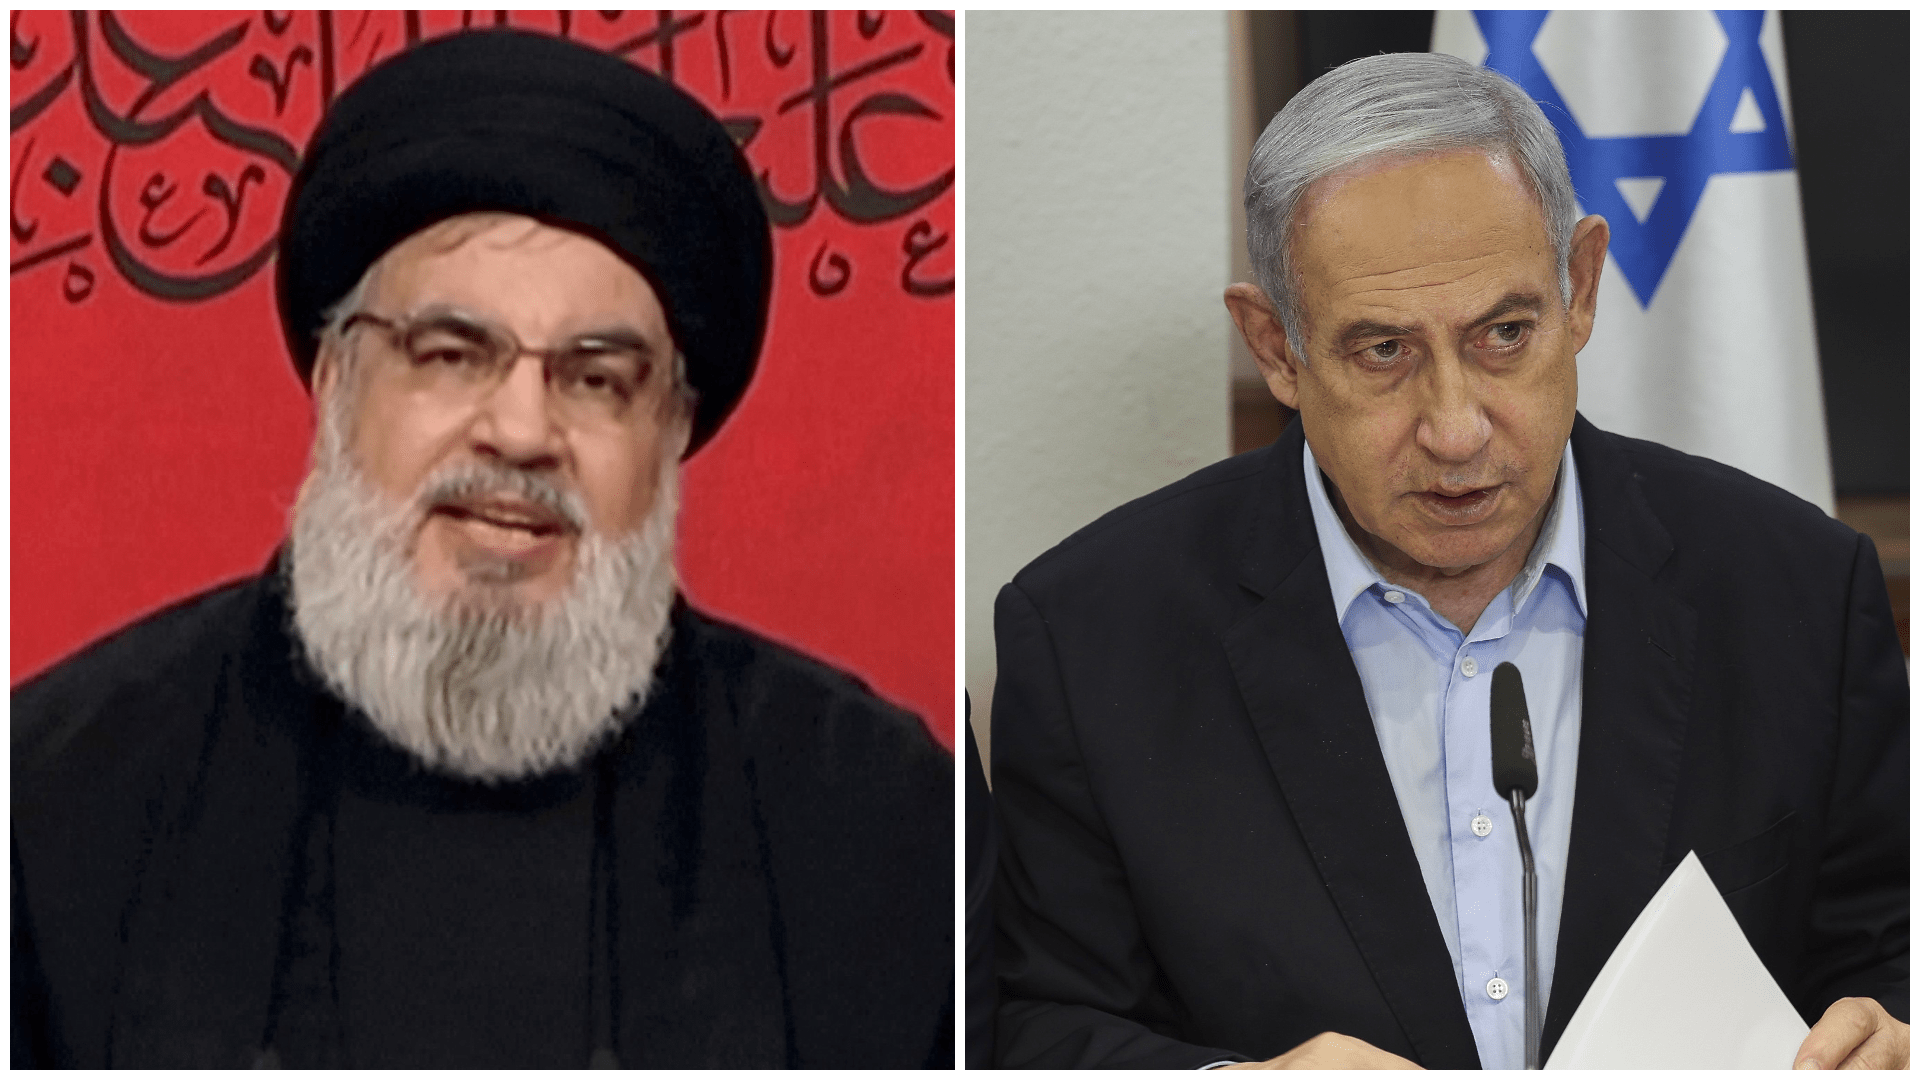 خطط حزب الله وتهديدات إسرائيل – هل أي من الجانبين مستعد للحرب؟ | أخبار الصراع الإسرائيلي الفلسطيني